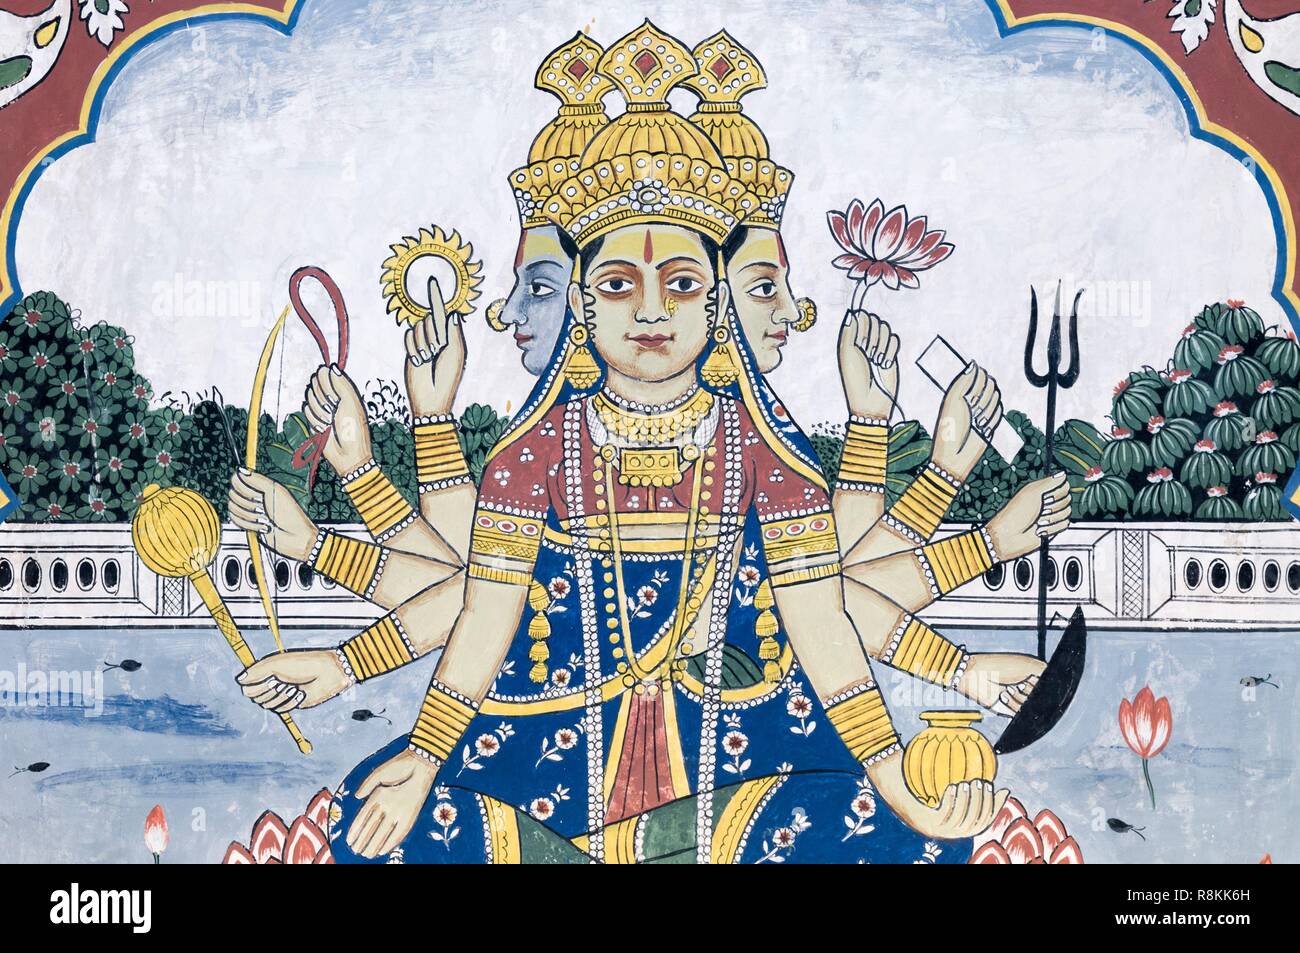 La India, el estado de Rajasthan, Nawalgarh, mural dentro de un haveli, una casa tradicional, el dios Hindú Brahma Foto de stock